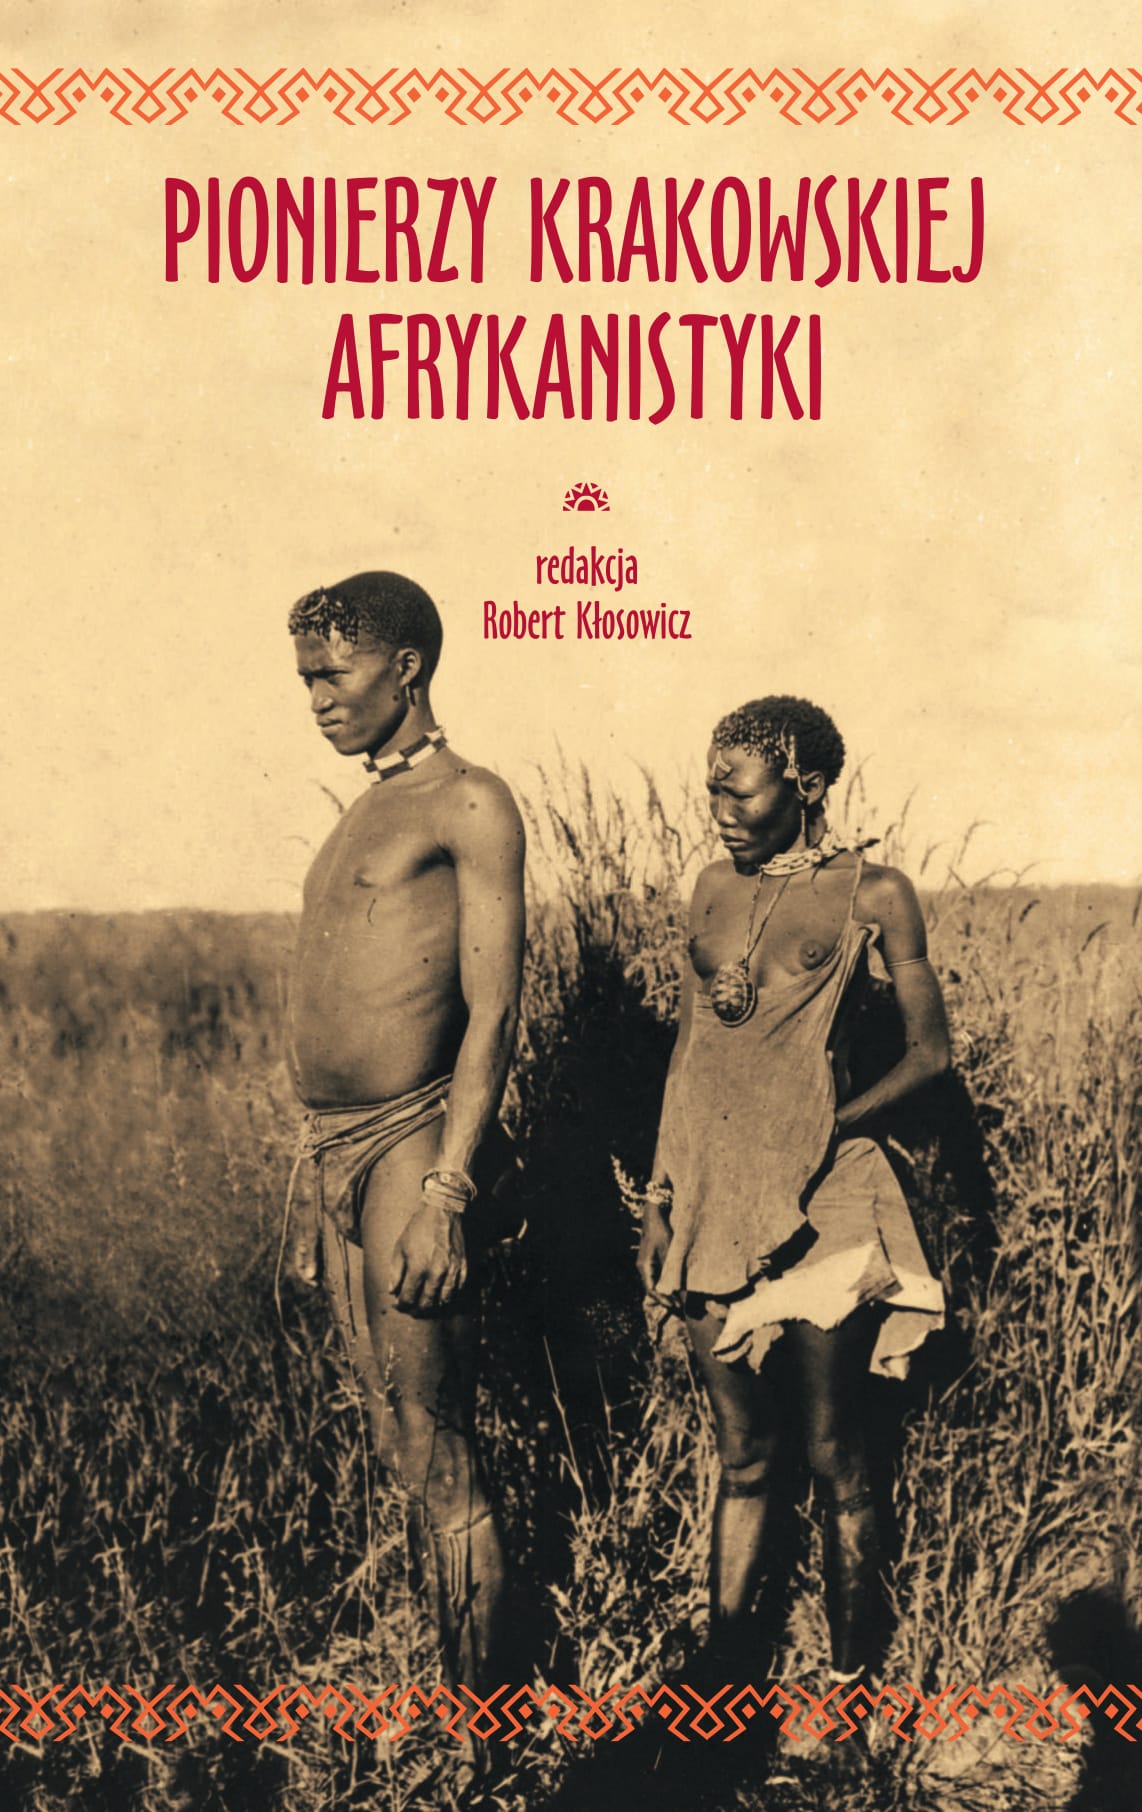 okładka książki pionierzy krakowskiej afrykanistyki